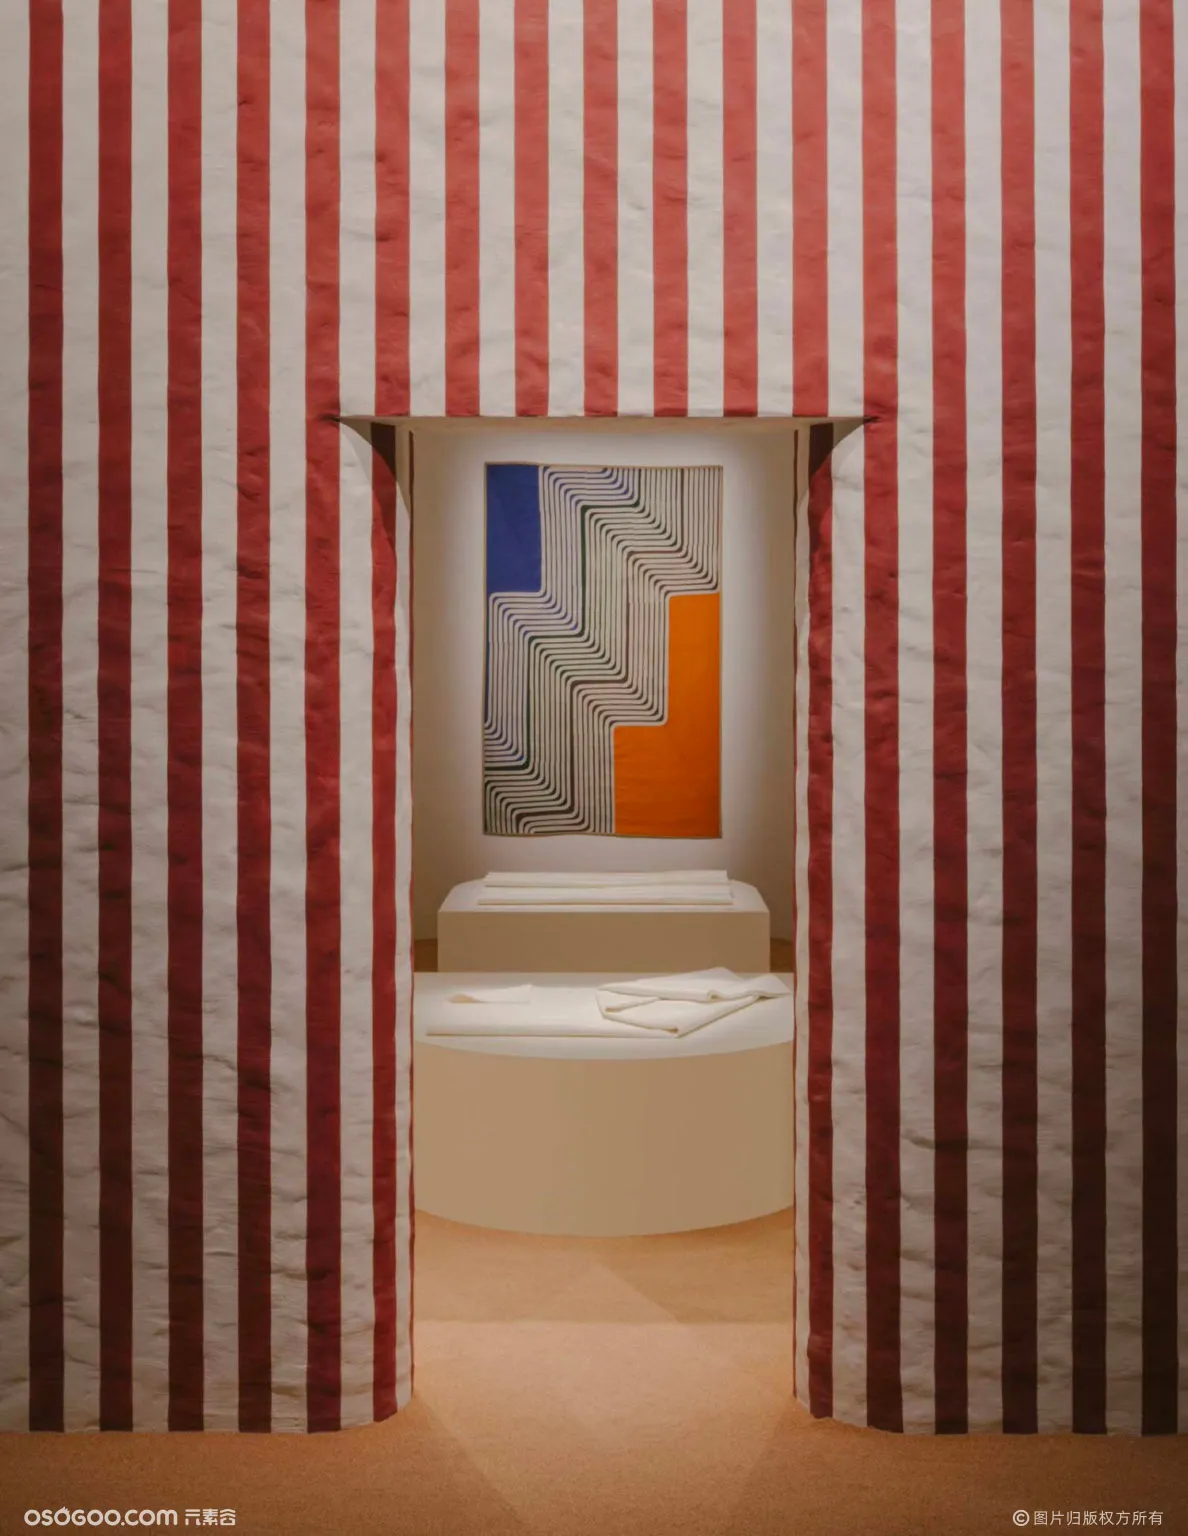 爱马仕在 2021 年米兰设计周上展示“家居系列”